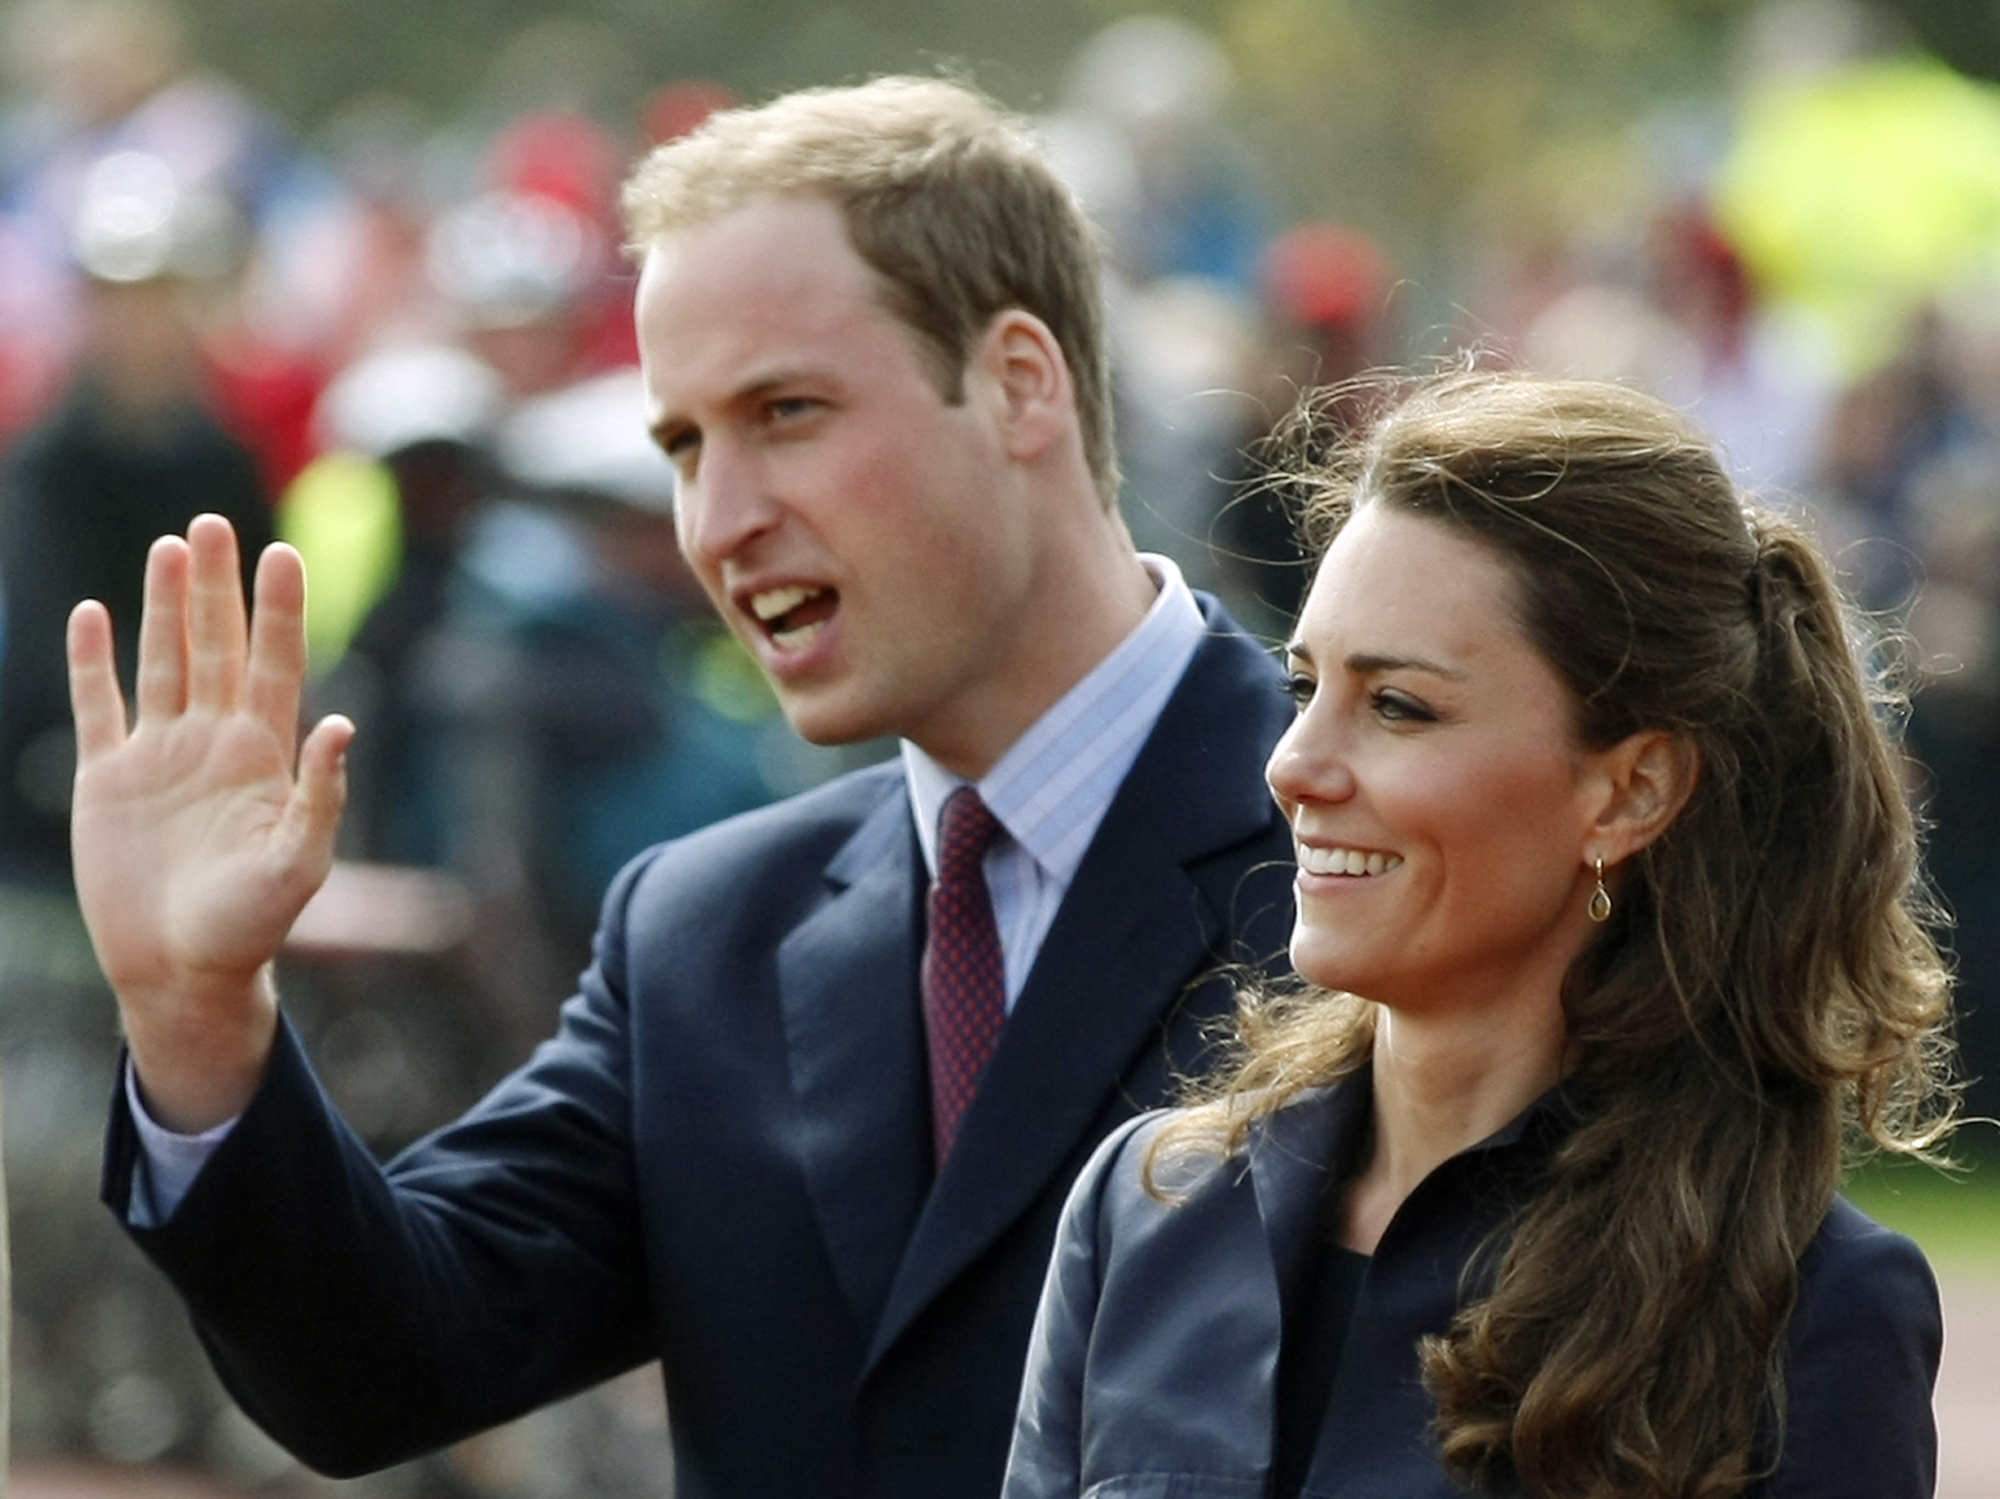 Prins William och Kate Middletons bröllopsdag kan bli förstörd av kravaller.